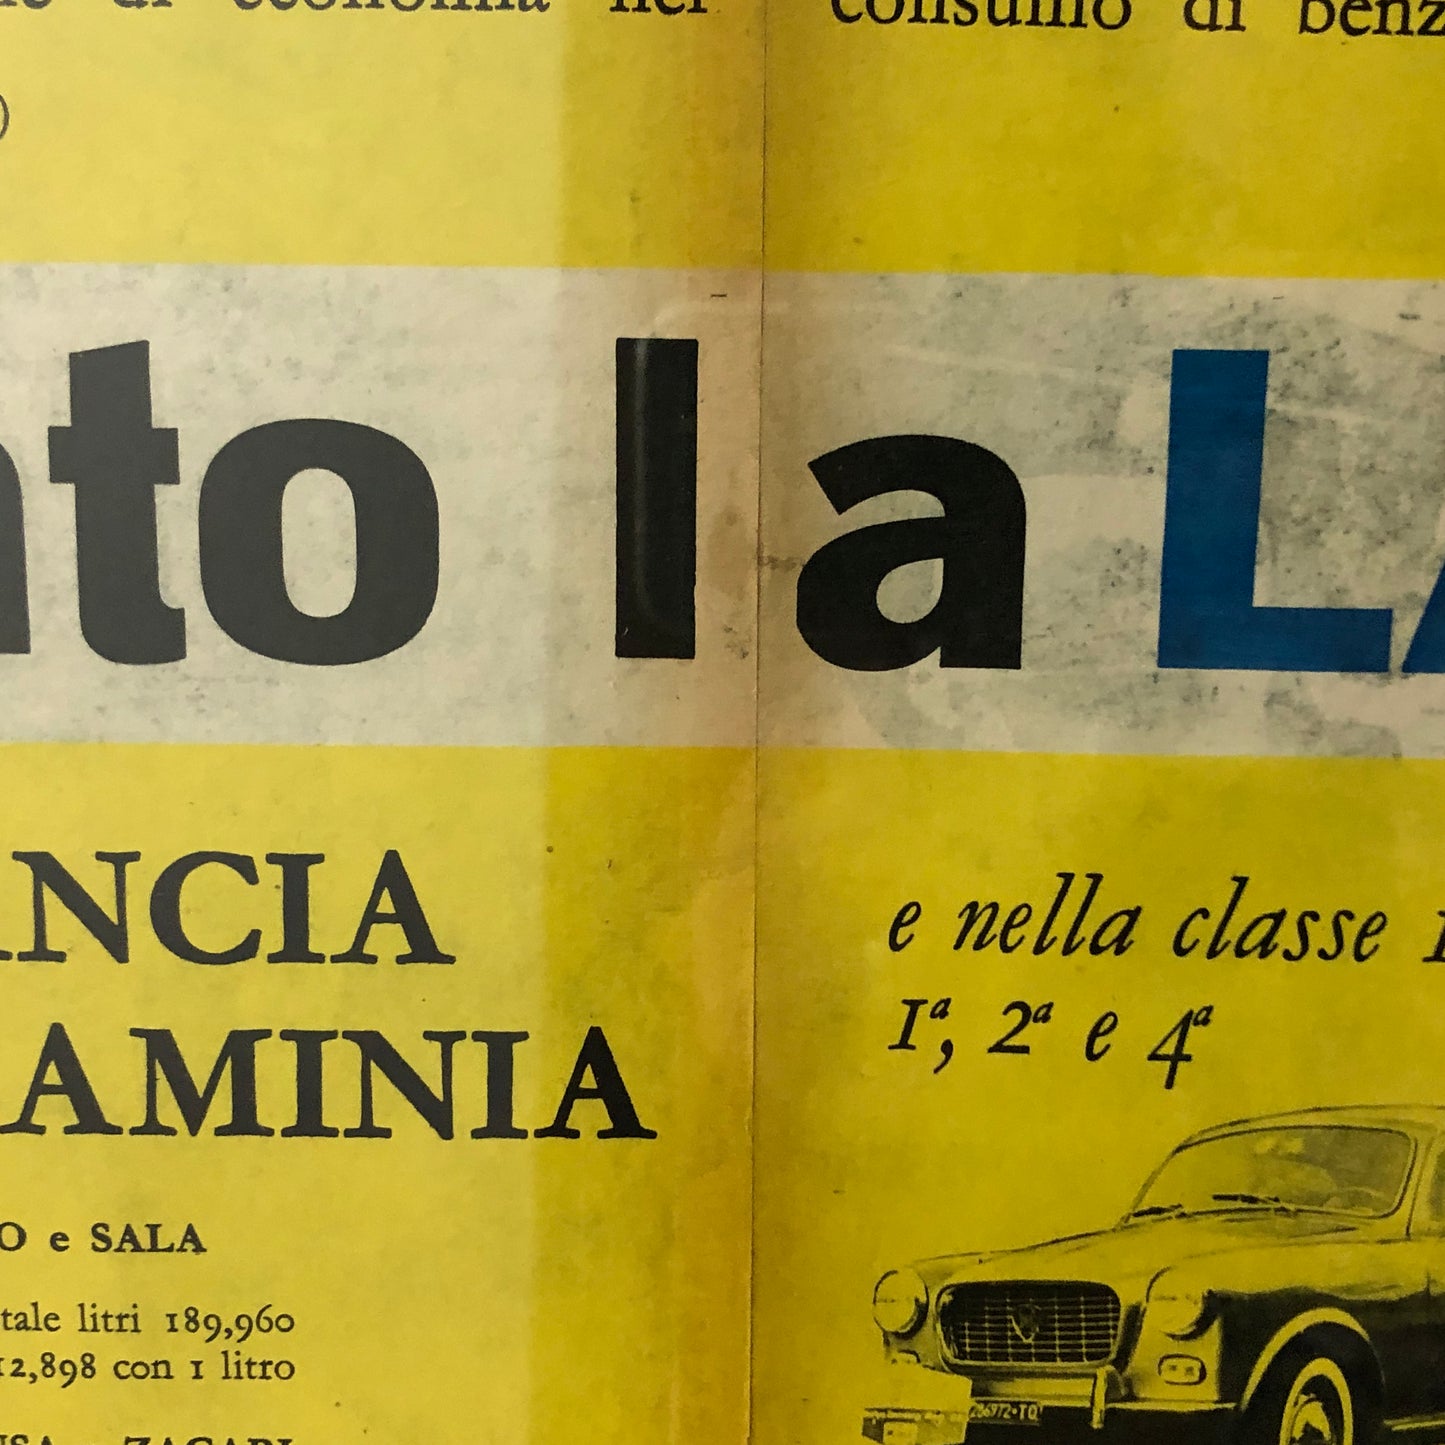 Lancia Pubblicità Anno 1959 Lancia Appia e Flaminia Vittoria Mobilgas Economy Run 59